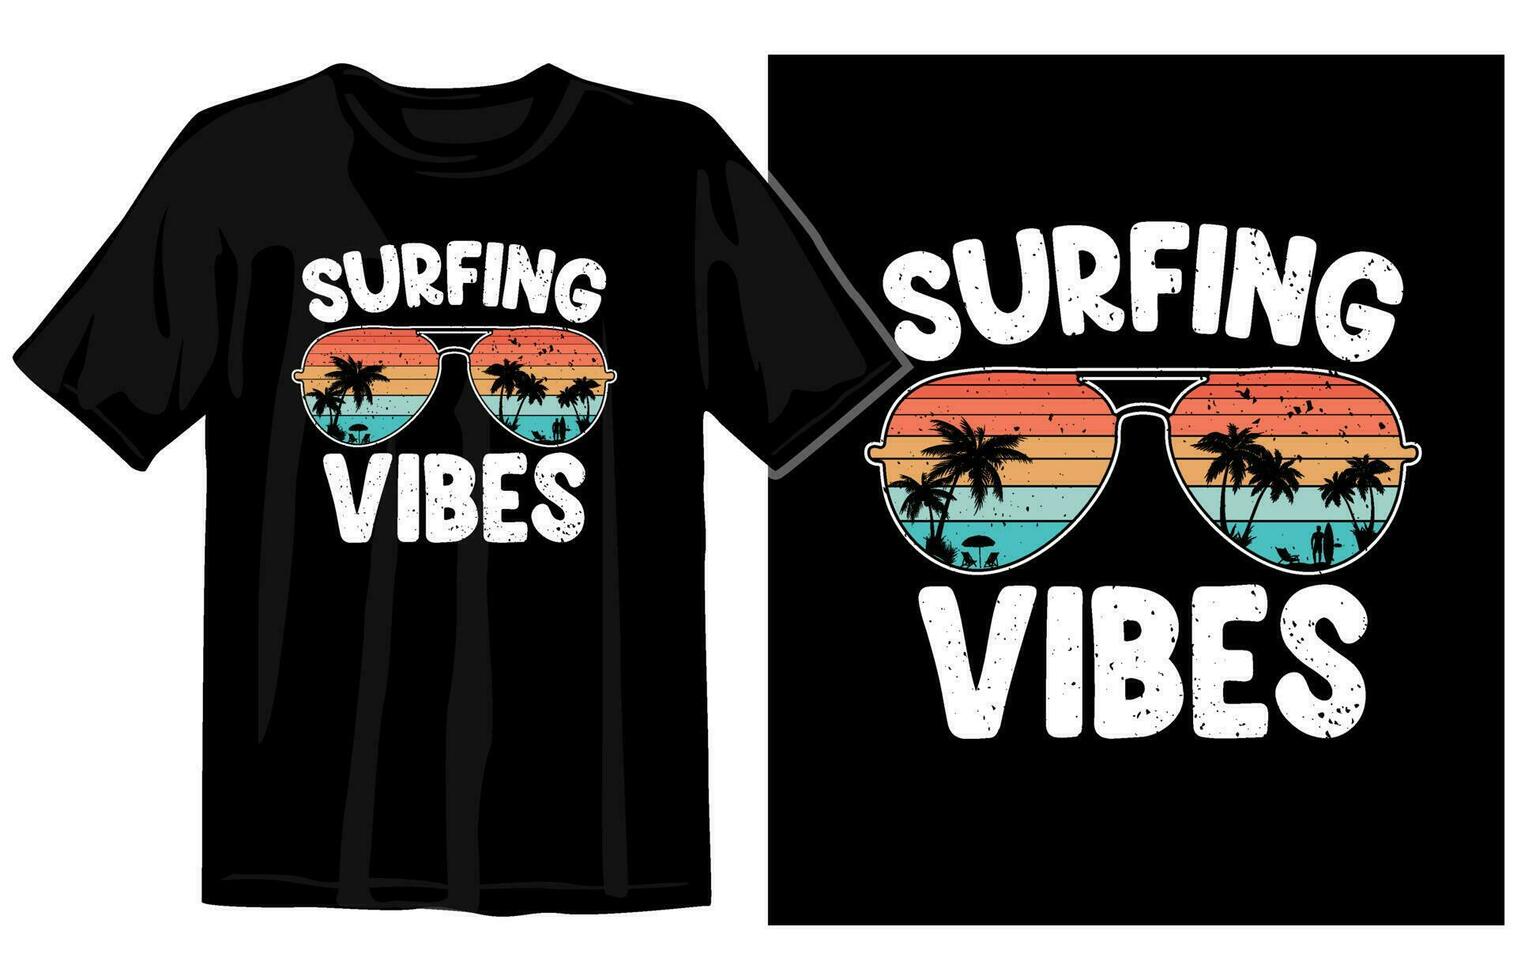 verão vintage camiseta projeto, verão tee Projeto vetor, verão de praia período de férias t camisas, verão surfar t camisa vetor